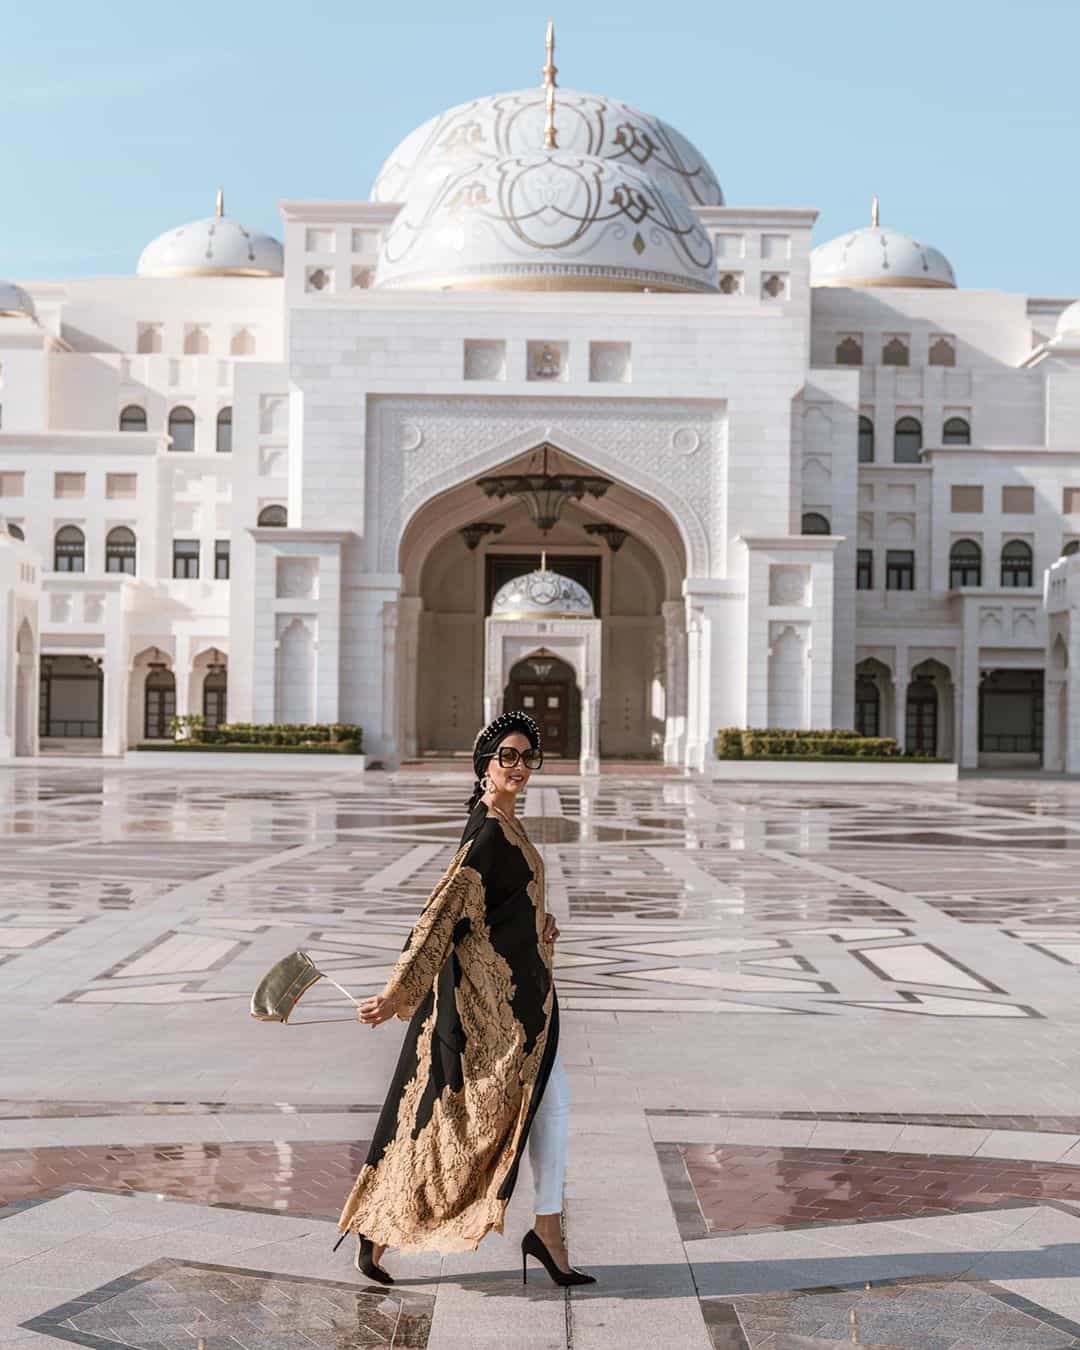 Красивая женщина прогуливается в национальном арабском платье около дворца в Абу-Даби.